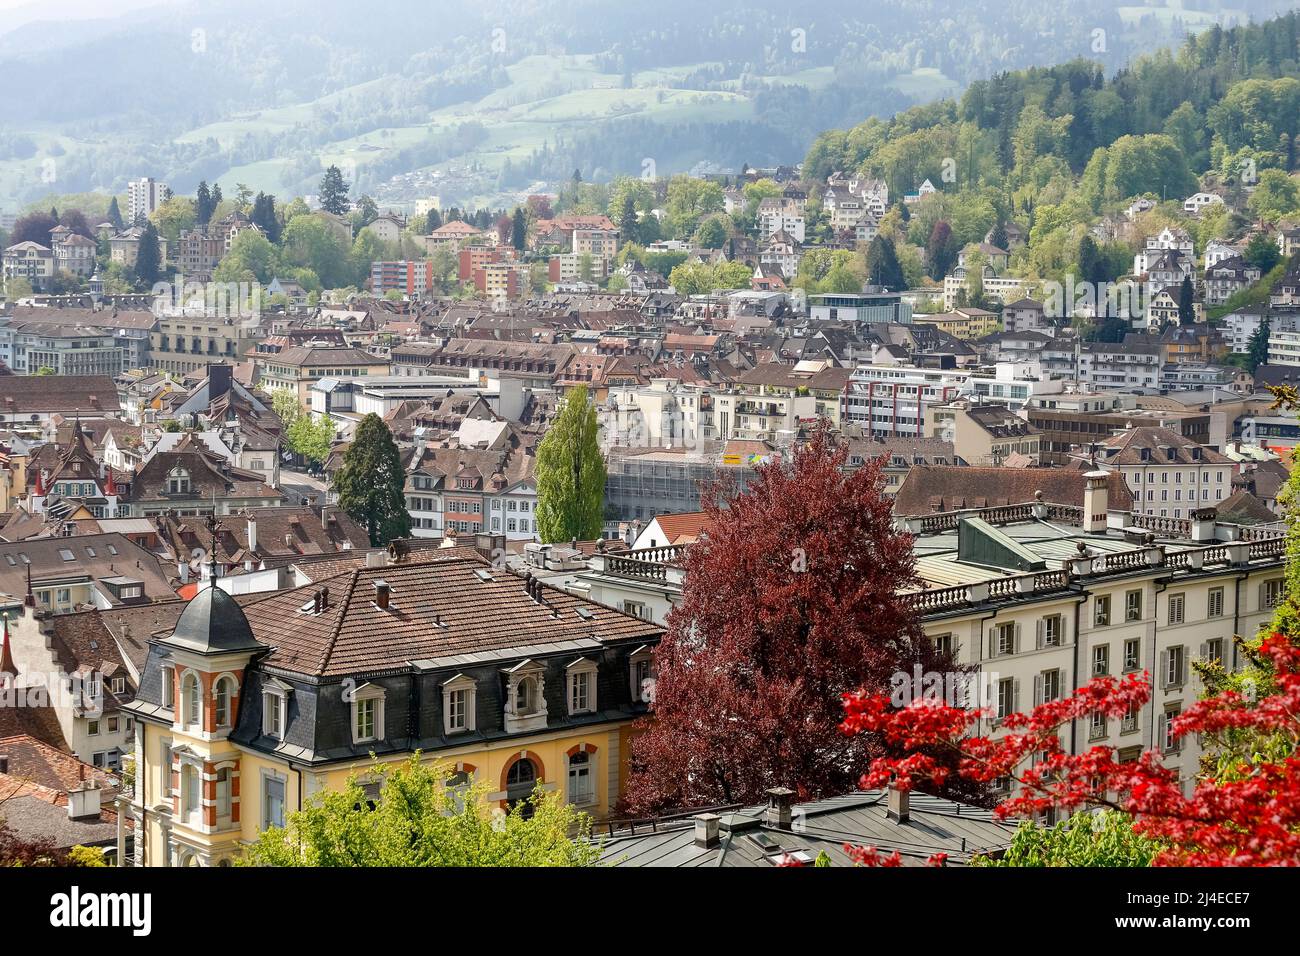 Lucerna, Suiza - 04 de mayo de 2016: Vista aérea de los diversos edificios muestra la densidad de edificios y la diversidad arquitectónica de la ciudad Foto de stock